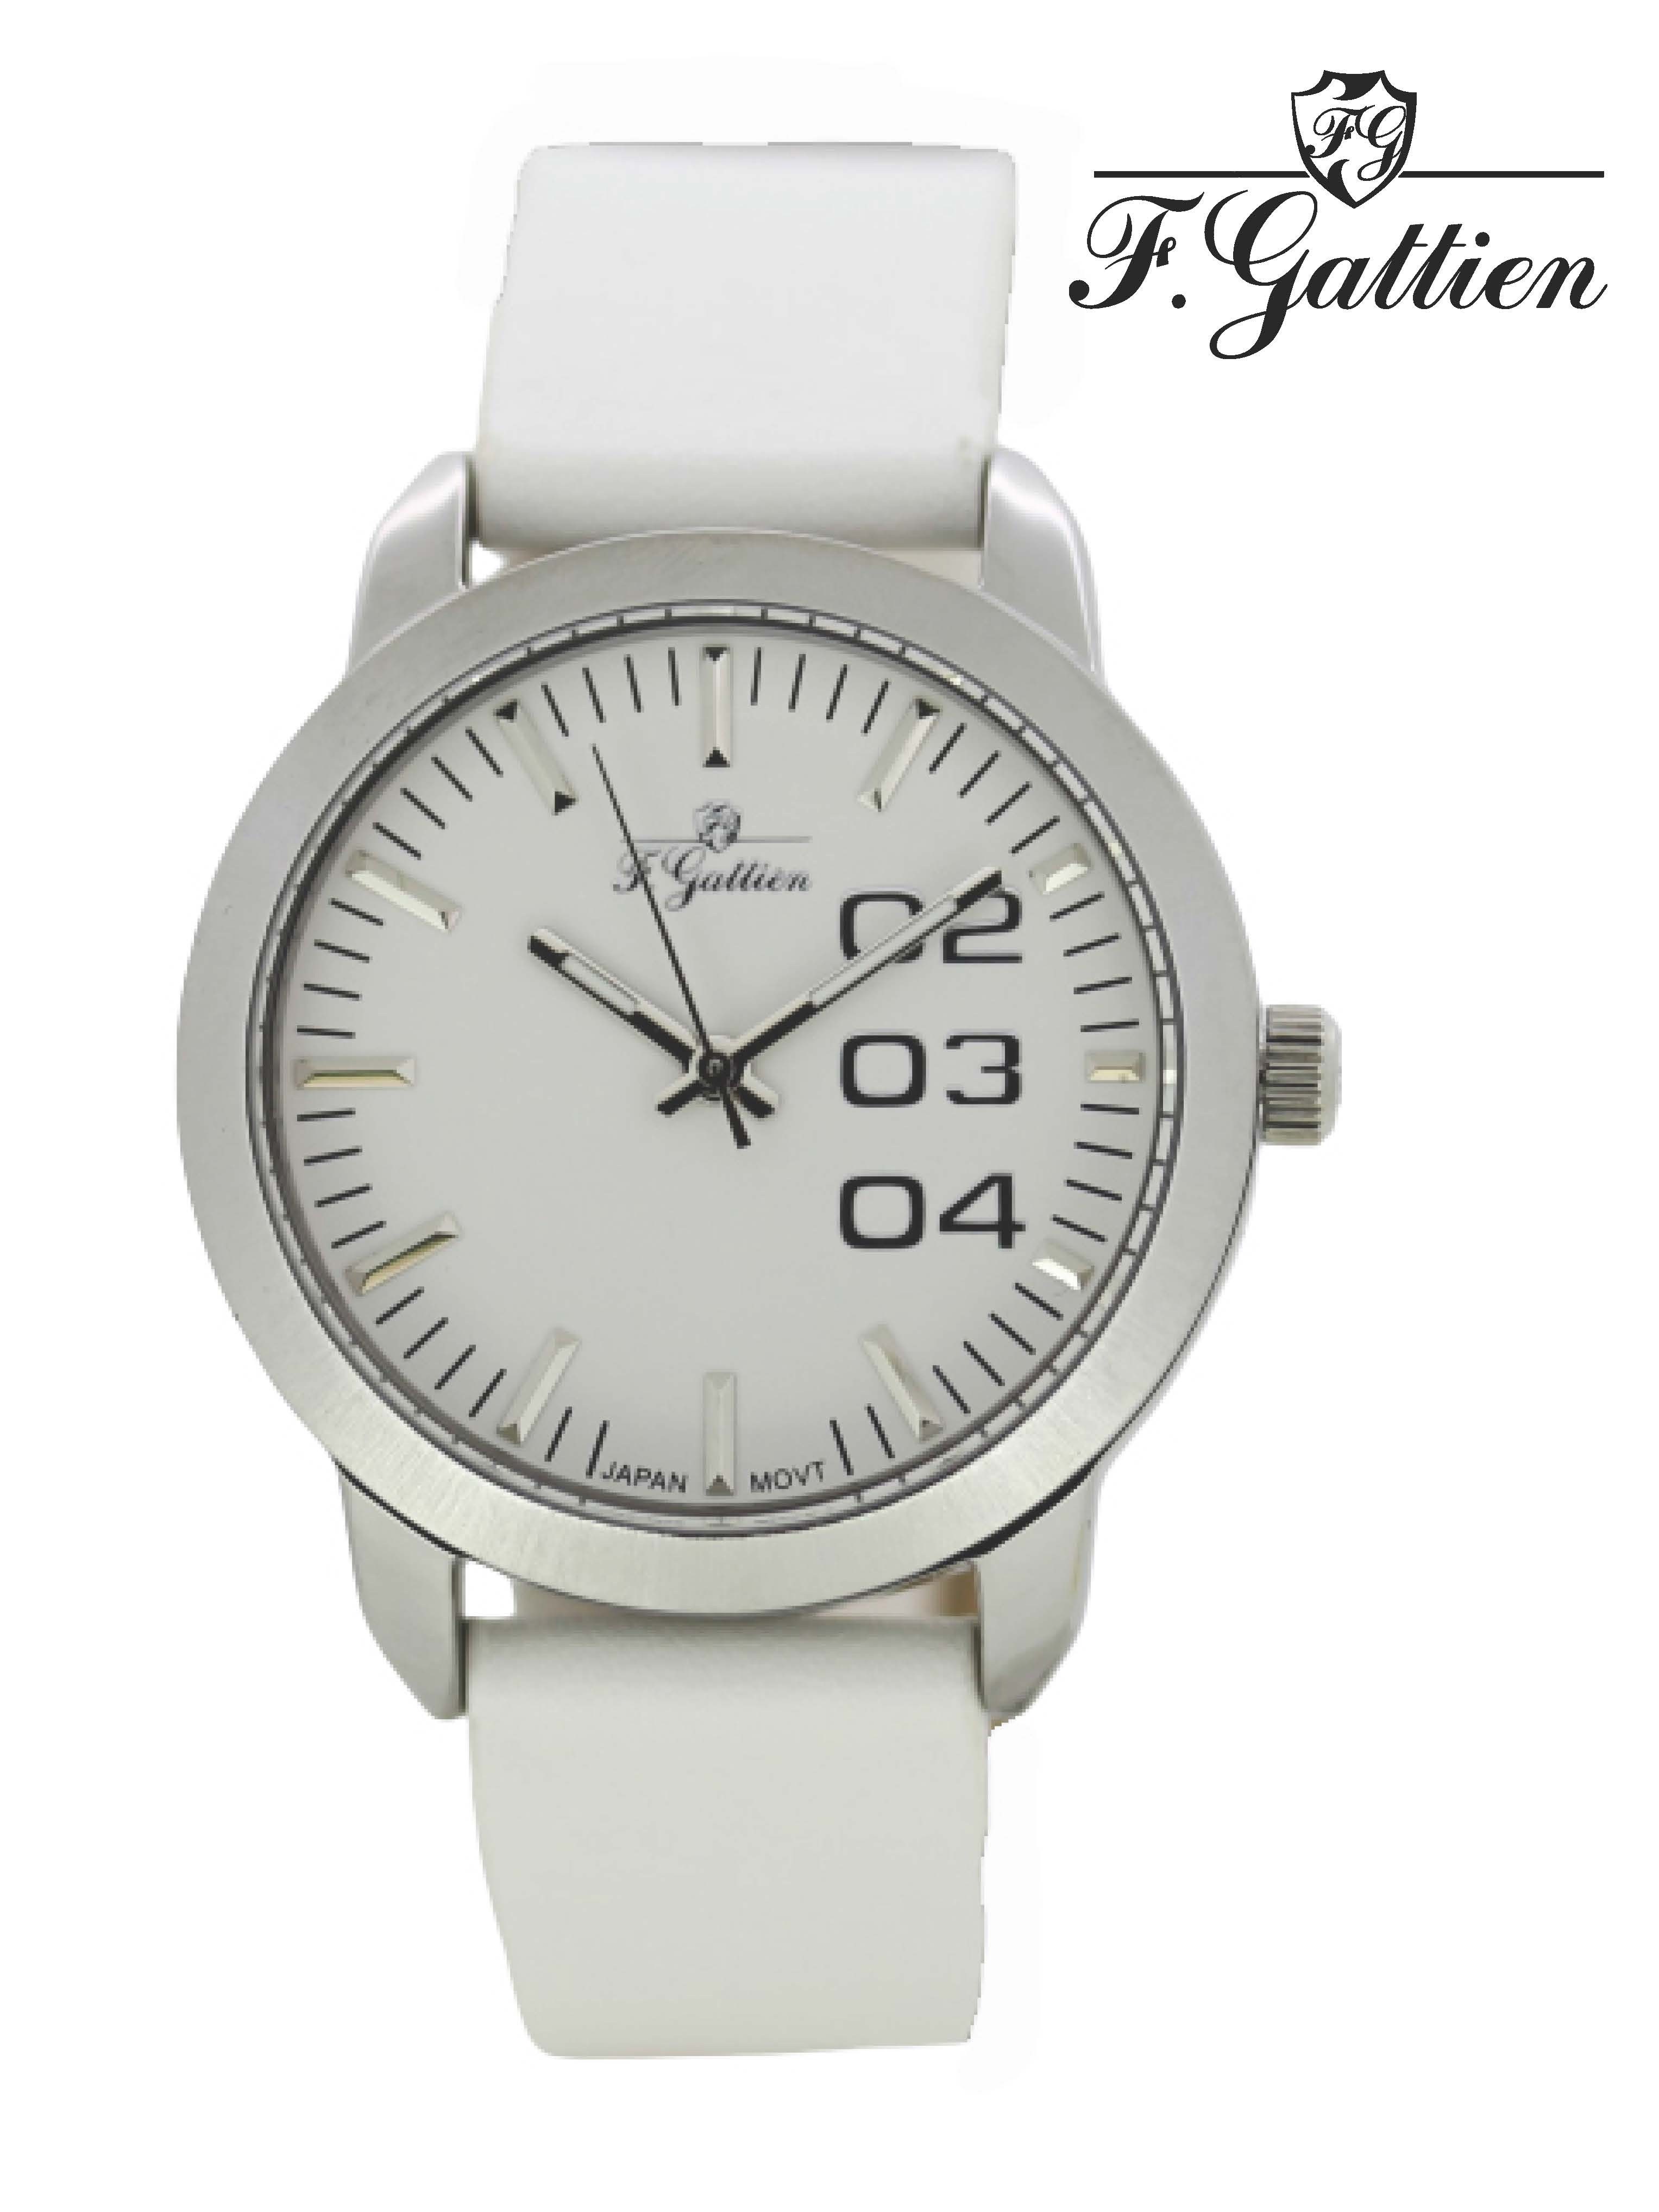 Наручные часы женские F.Gattien 10659-311-02 белые